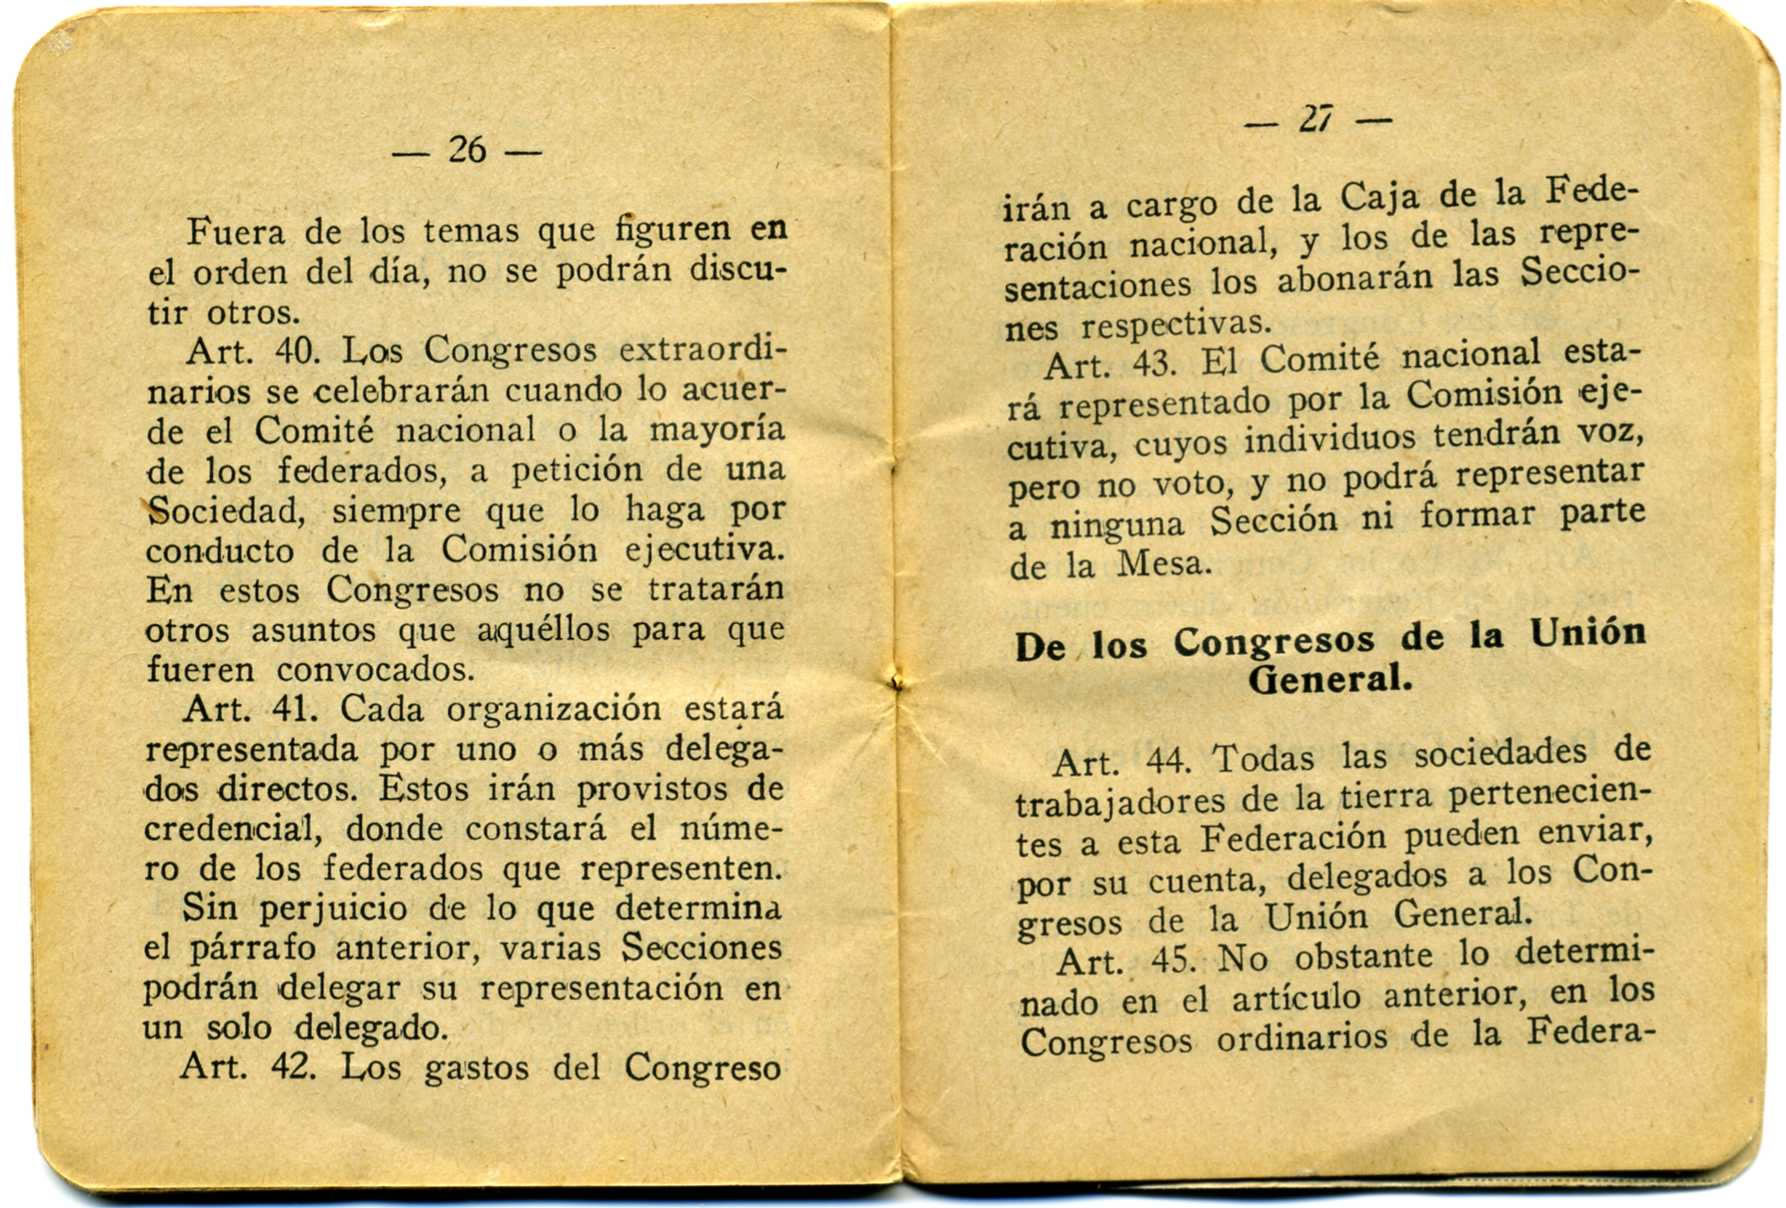 CEL-DO-A0049o - Carnet U.G.T. Joaquín Alós i Roselló